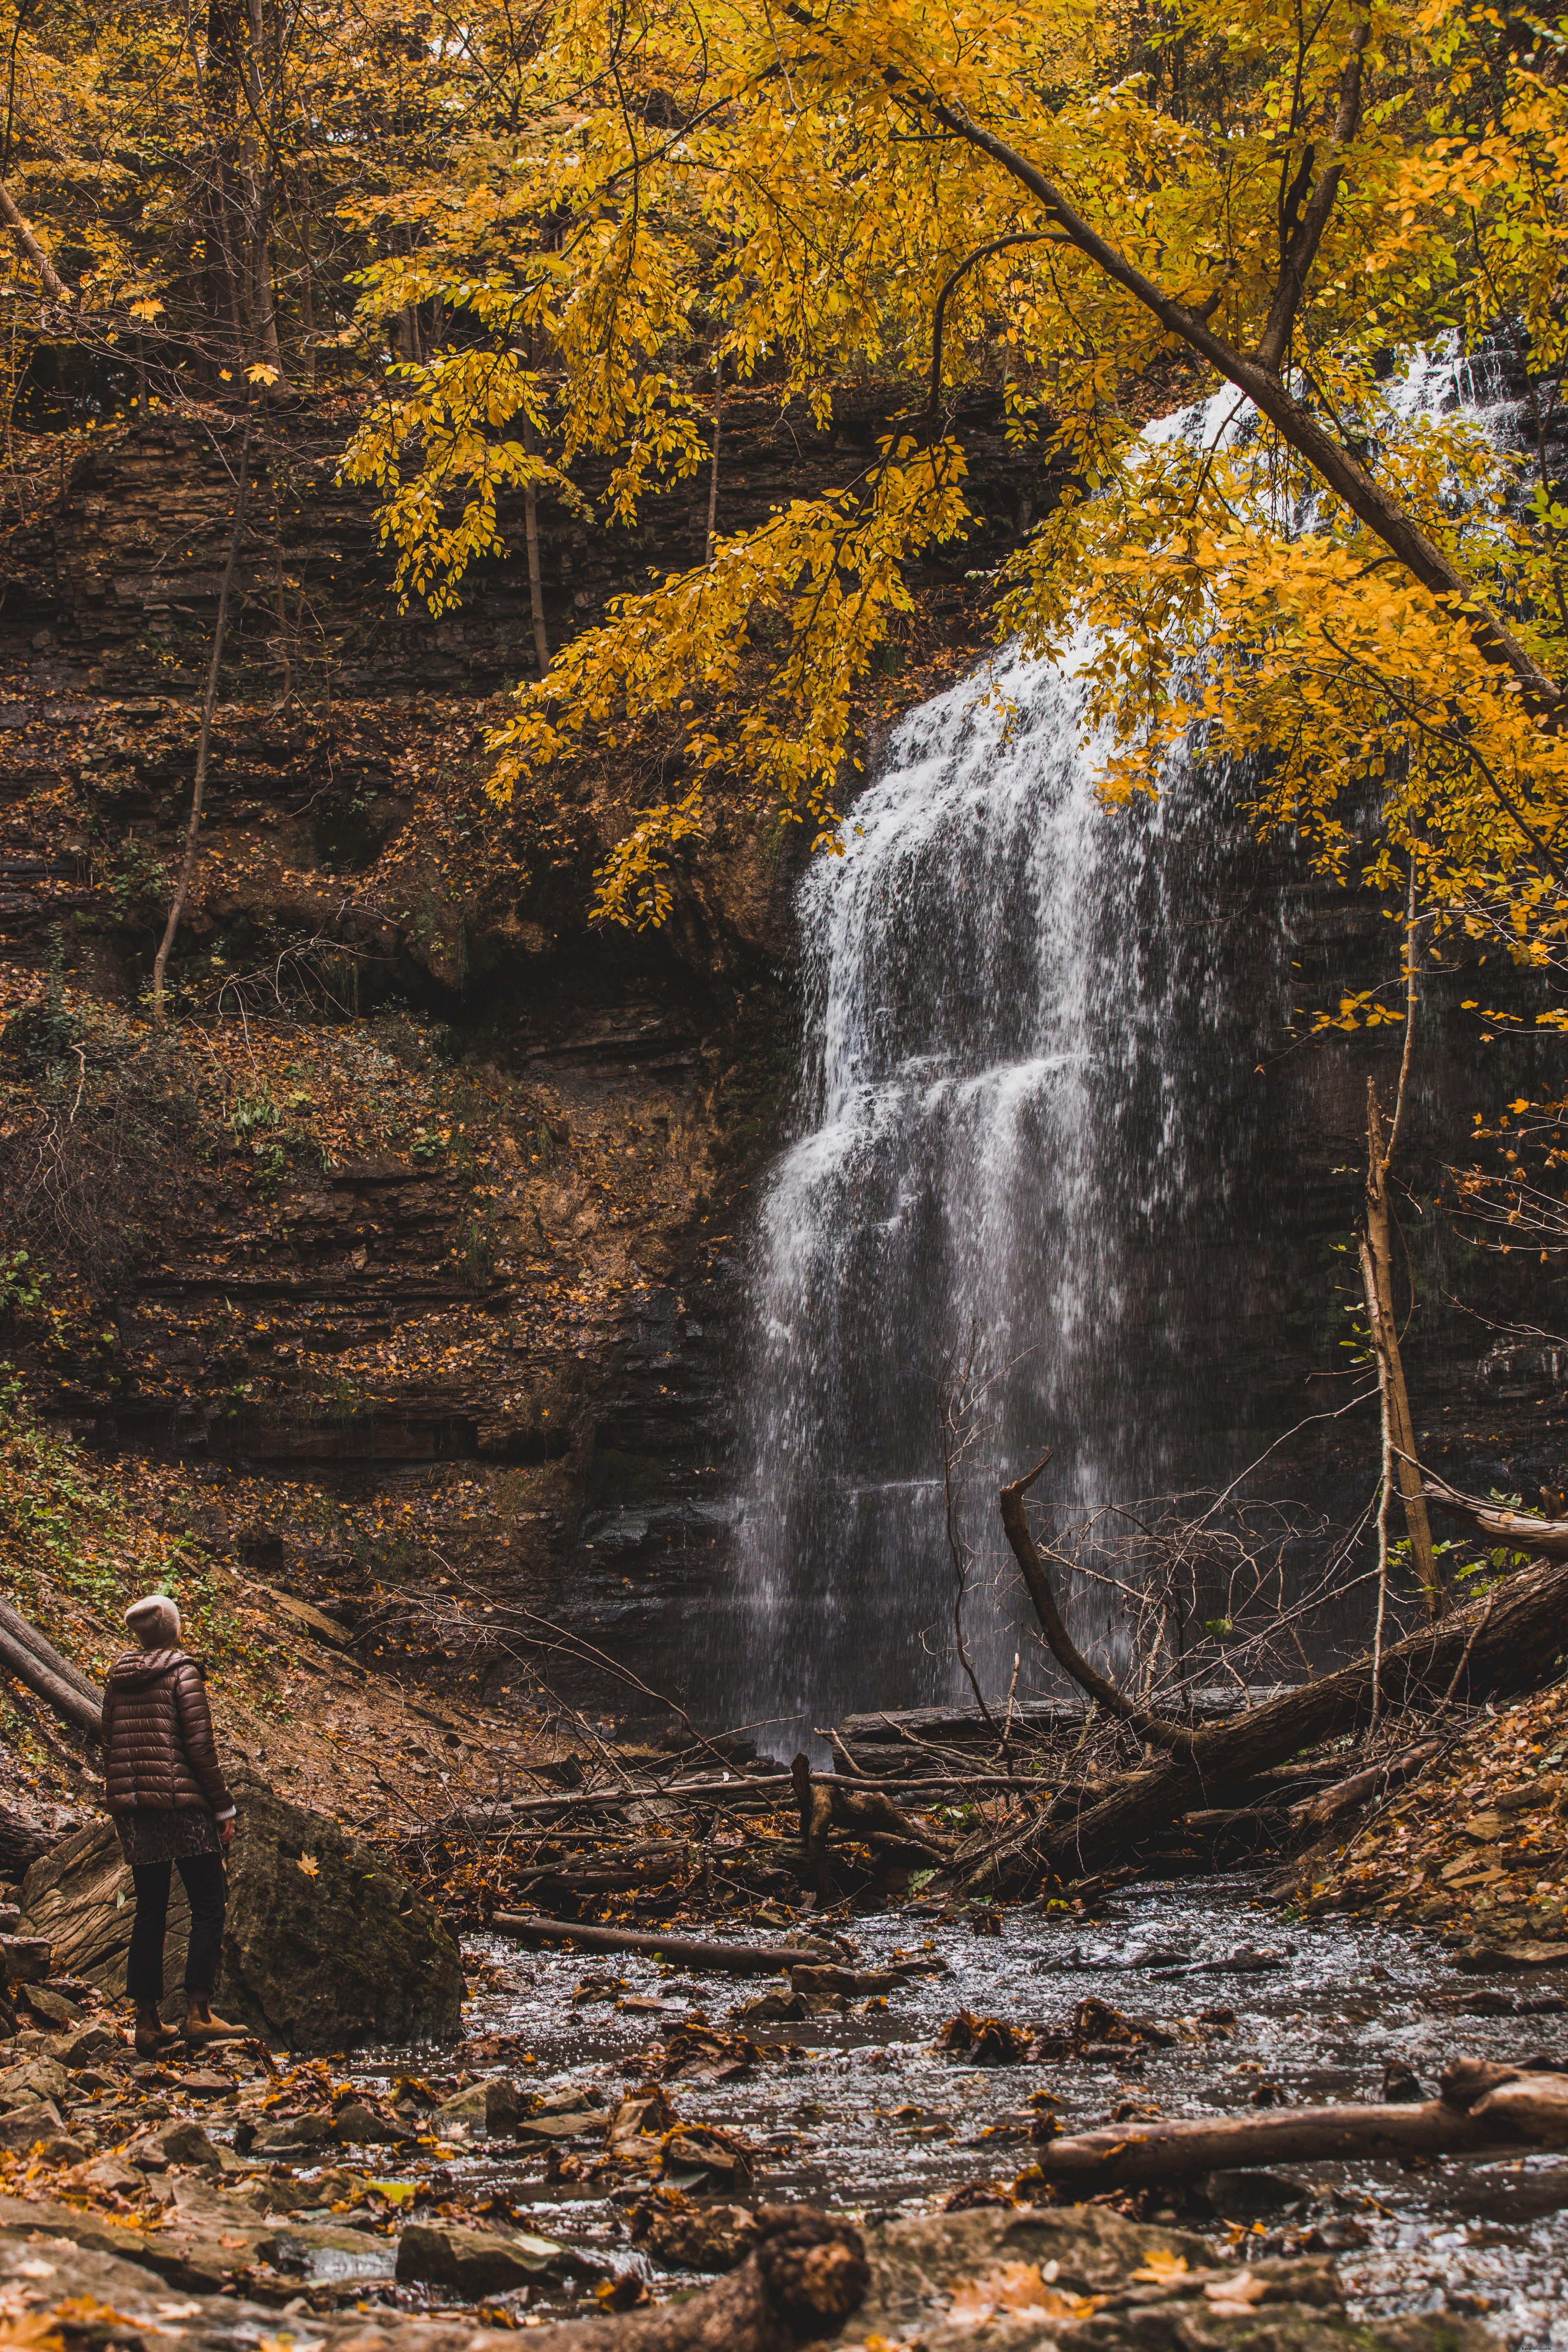 Caminhante olha para cachoeira na foto de outono